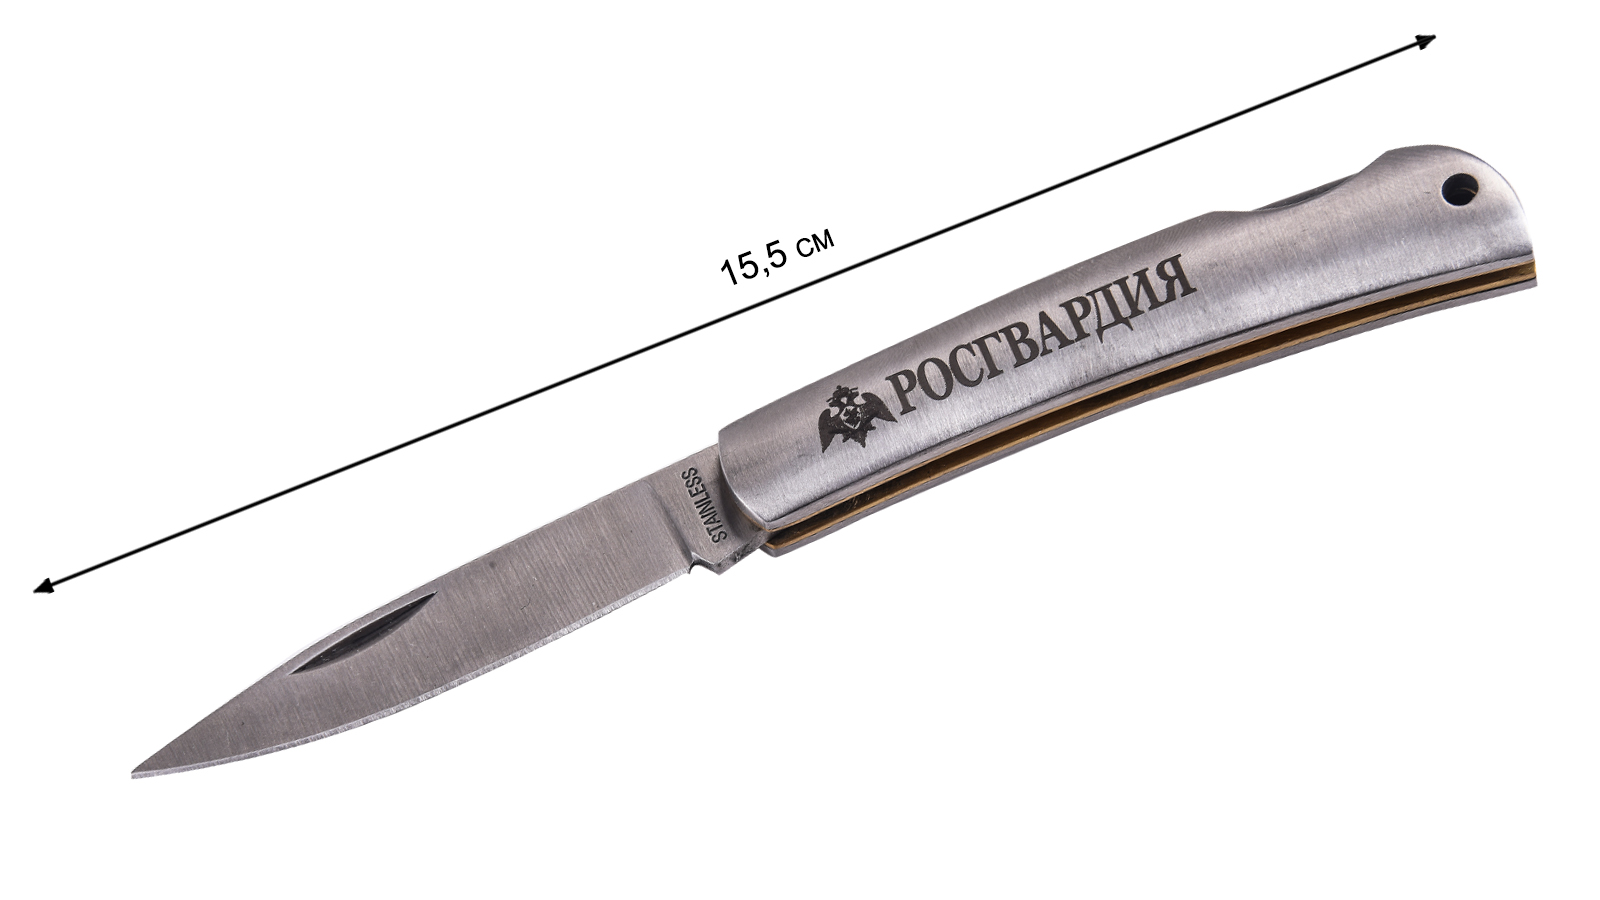 Оригинальный нож "Росгвардия" складной с авторской гравировкой